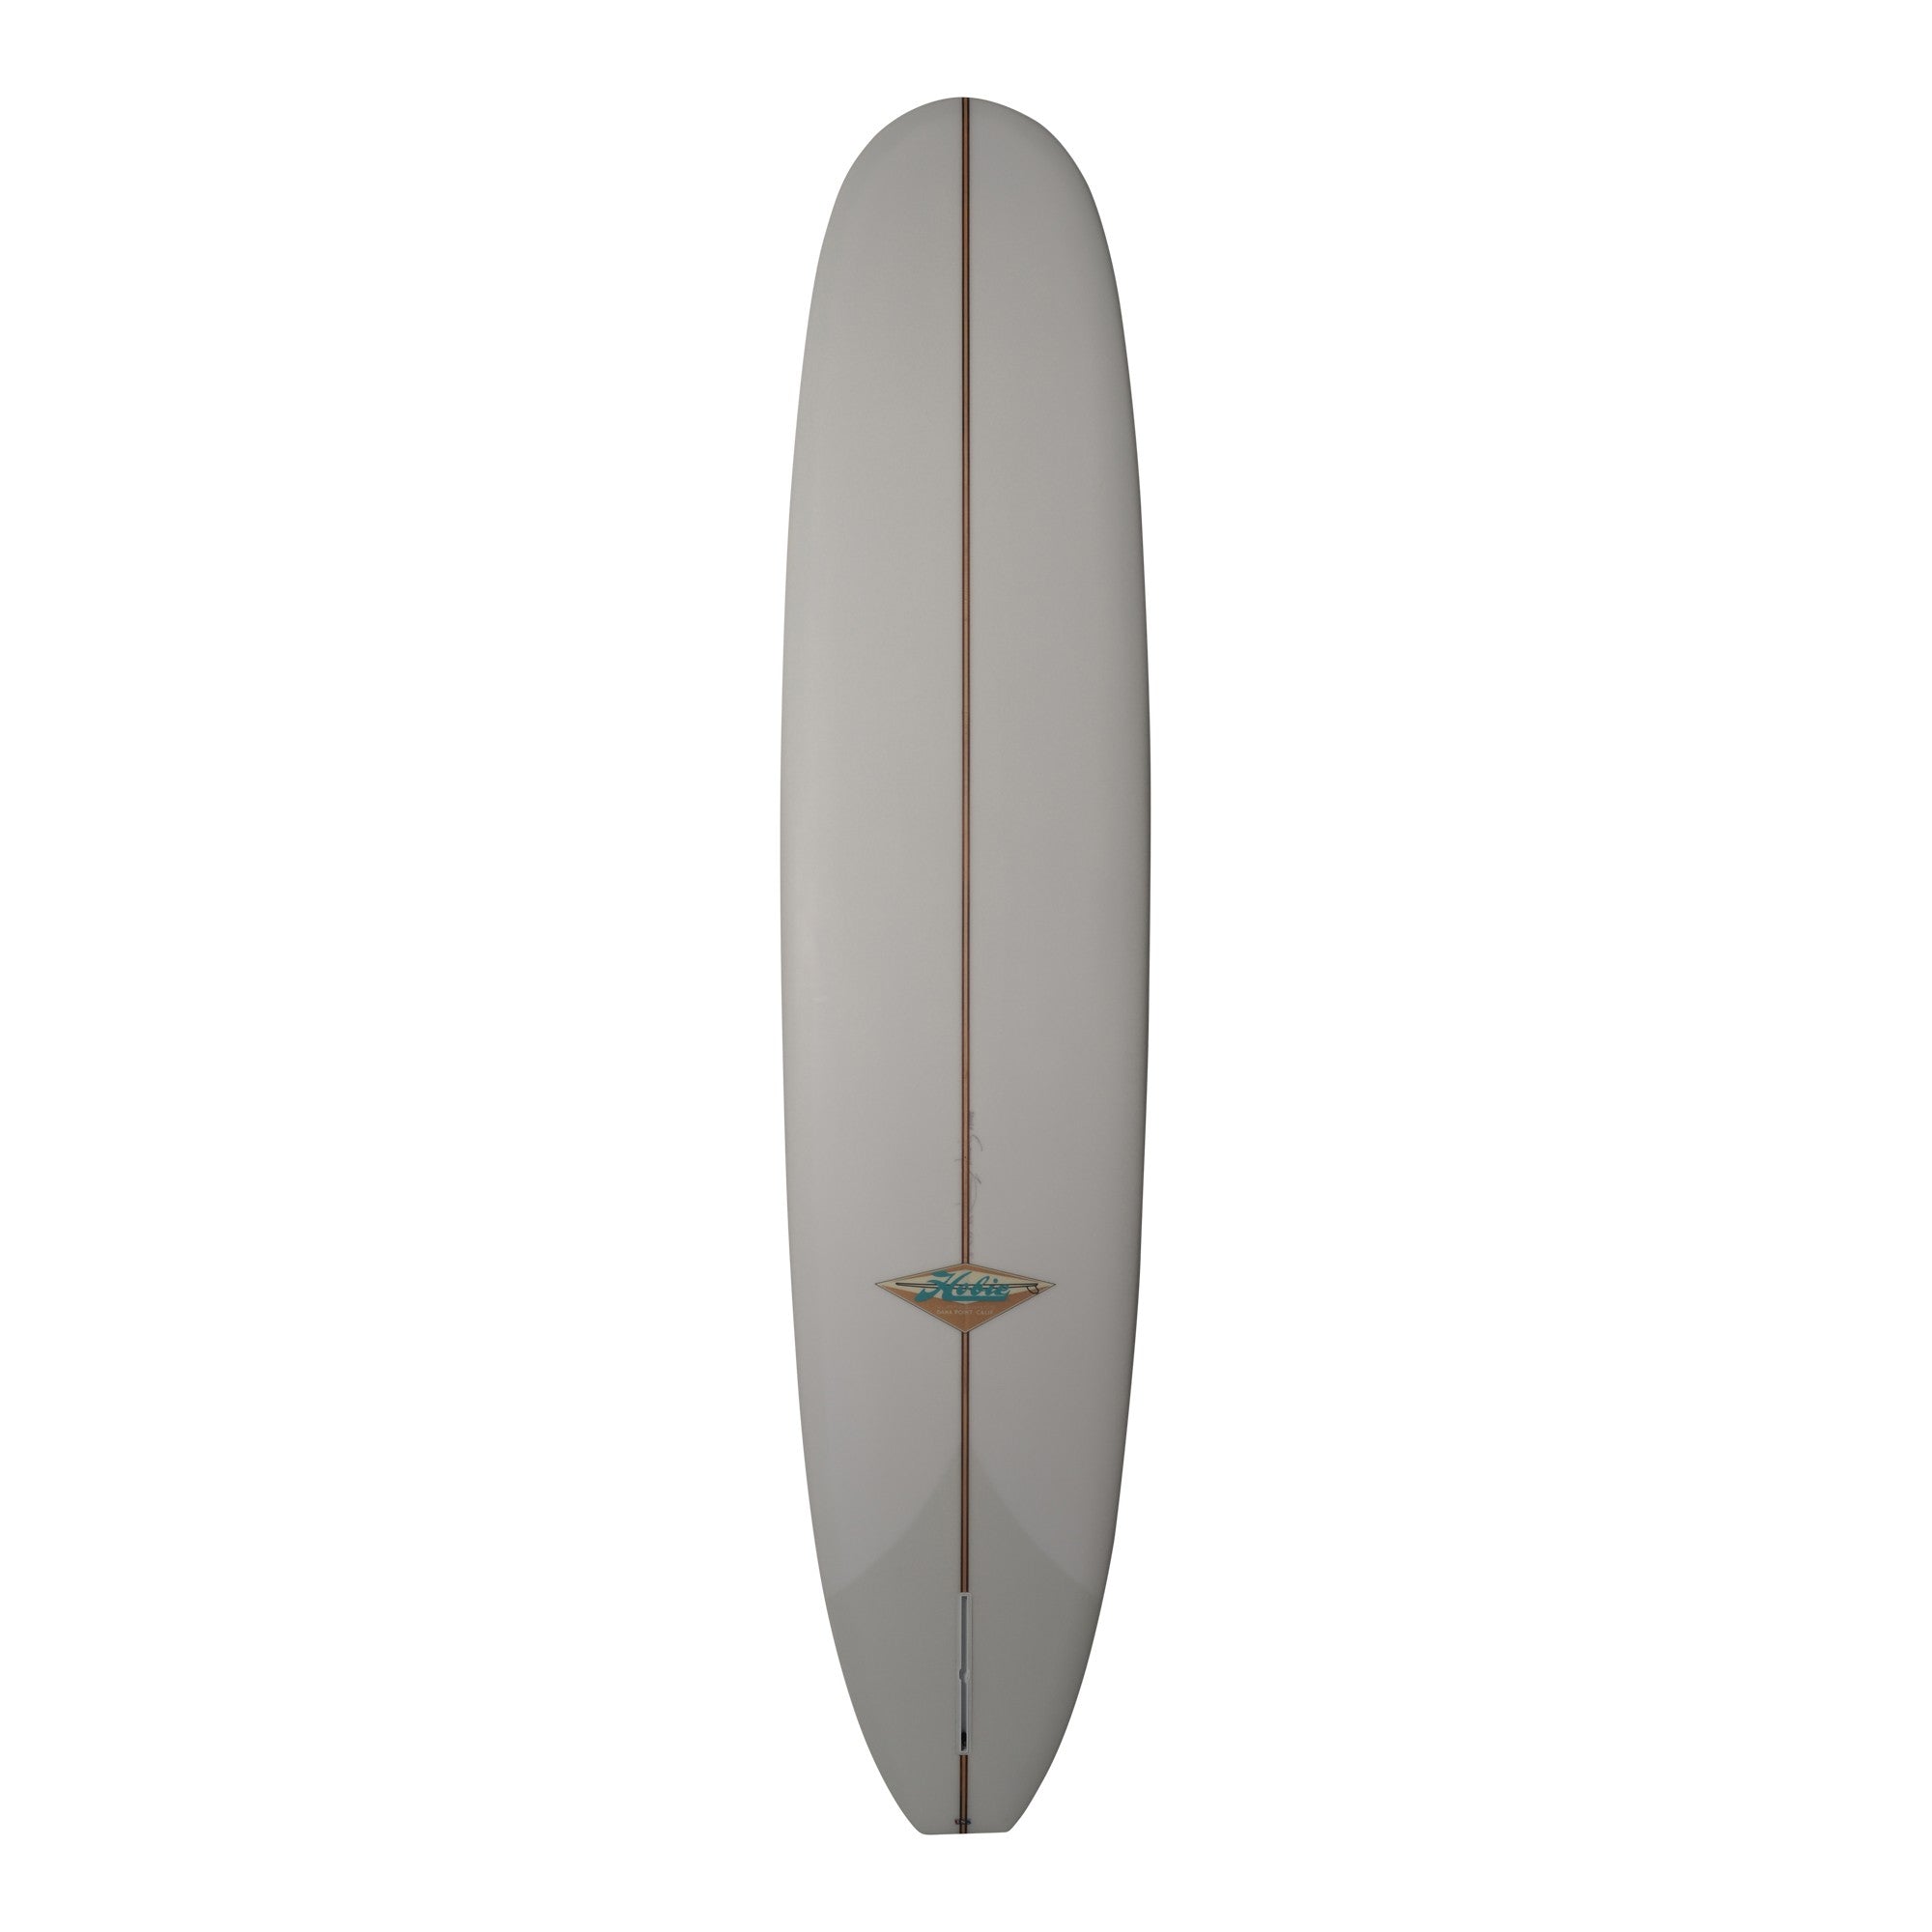 HOBIE Surfboards - Uncle Buck Longboard 9'4 (PU) - Volan